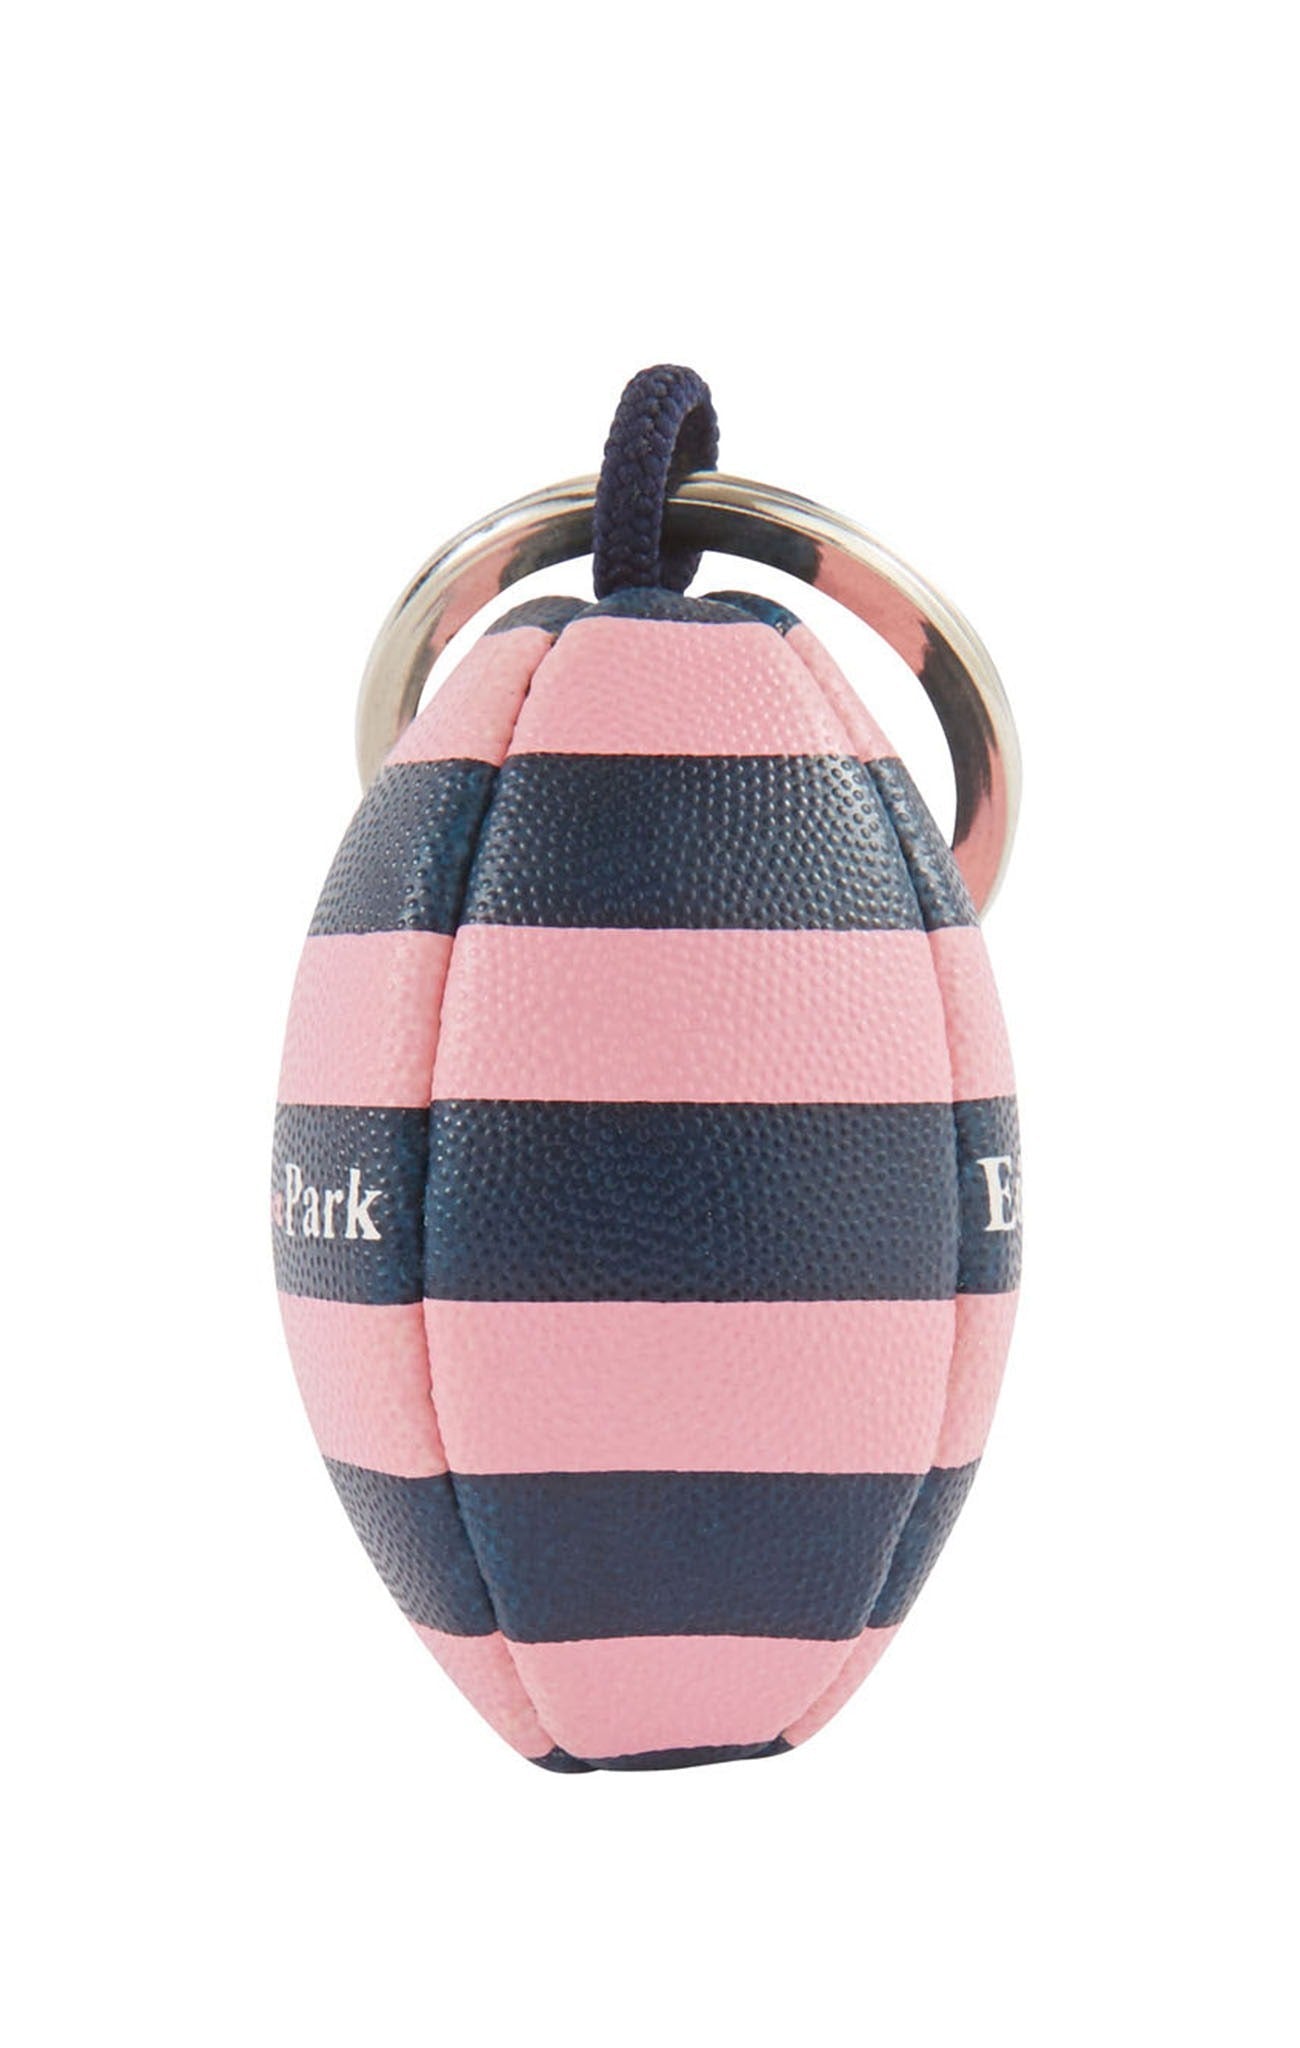 Porte-clés ballon de rugby cerclé en caoutchouc - Image 2